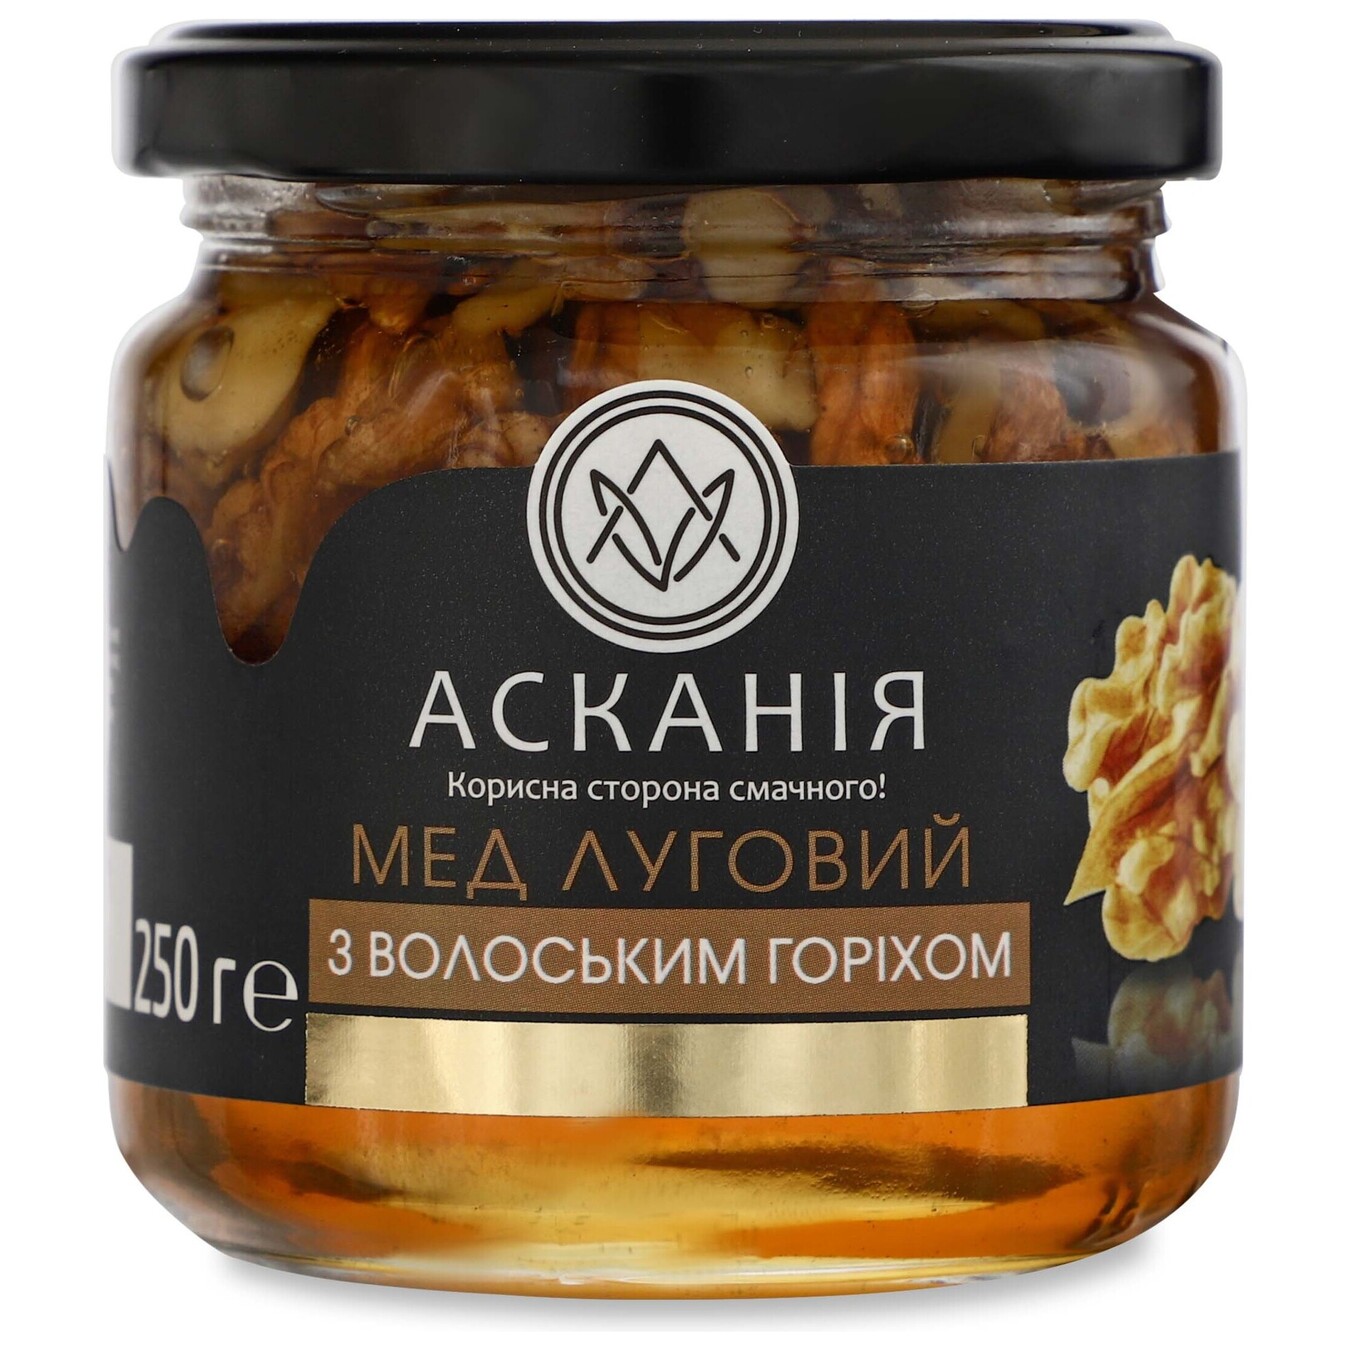 Askania honey with walnut 250g